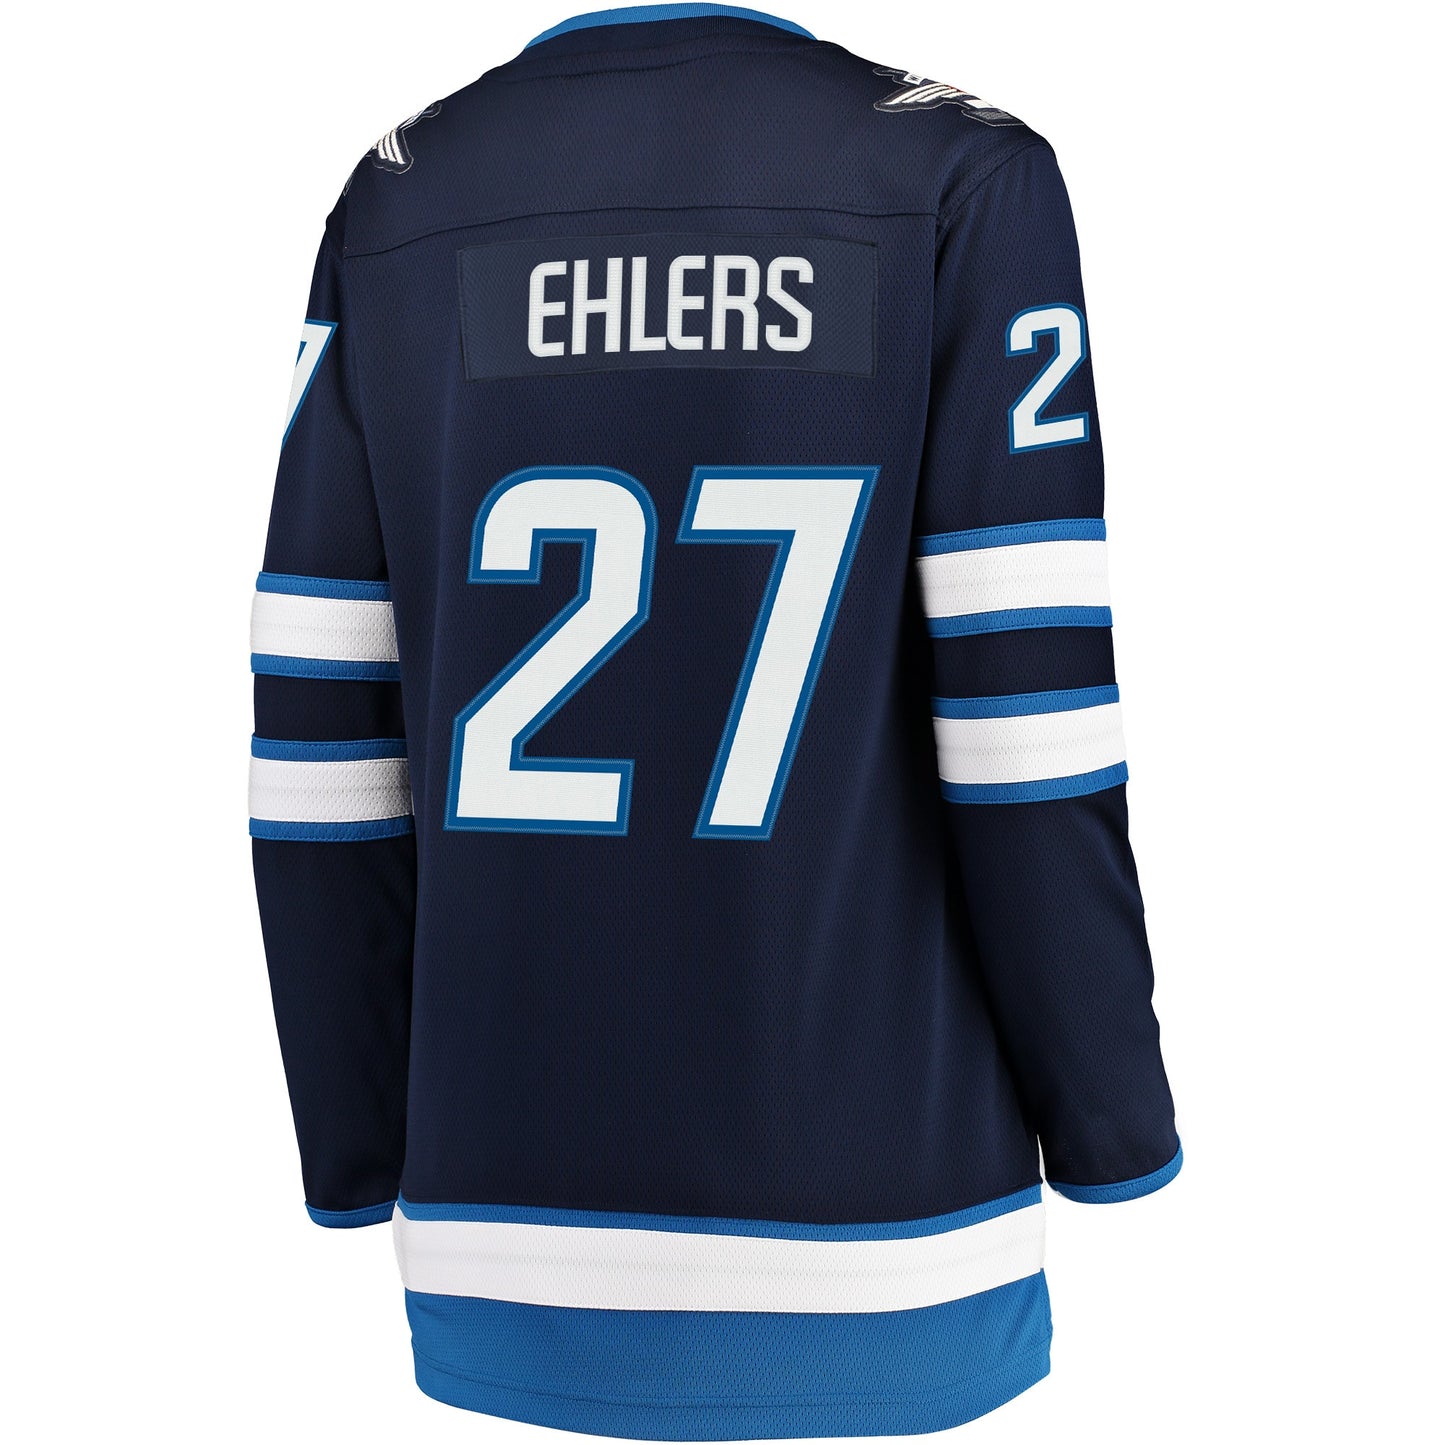 Nikolaj Ehlers Winnipeg Jets Fanatics Branded Women's Breakaway Player Jersey - Navy